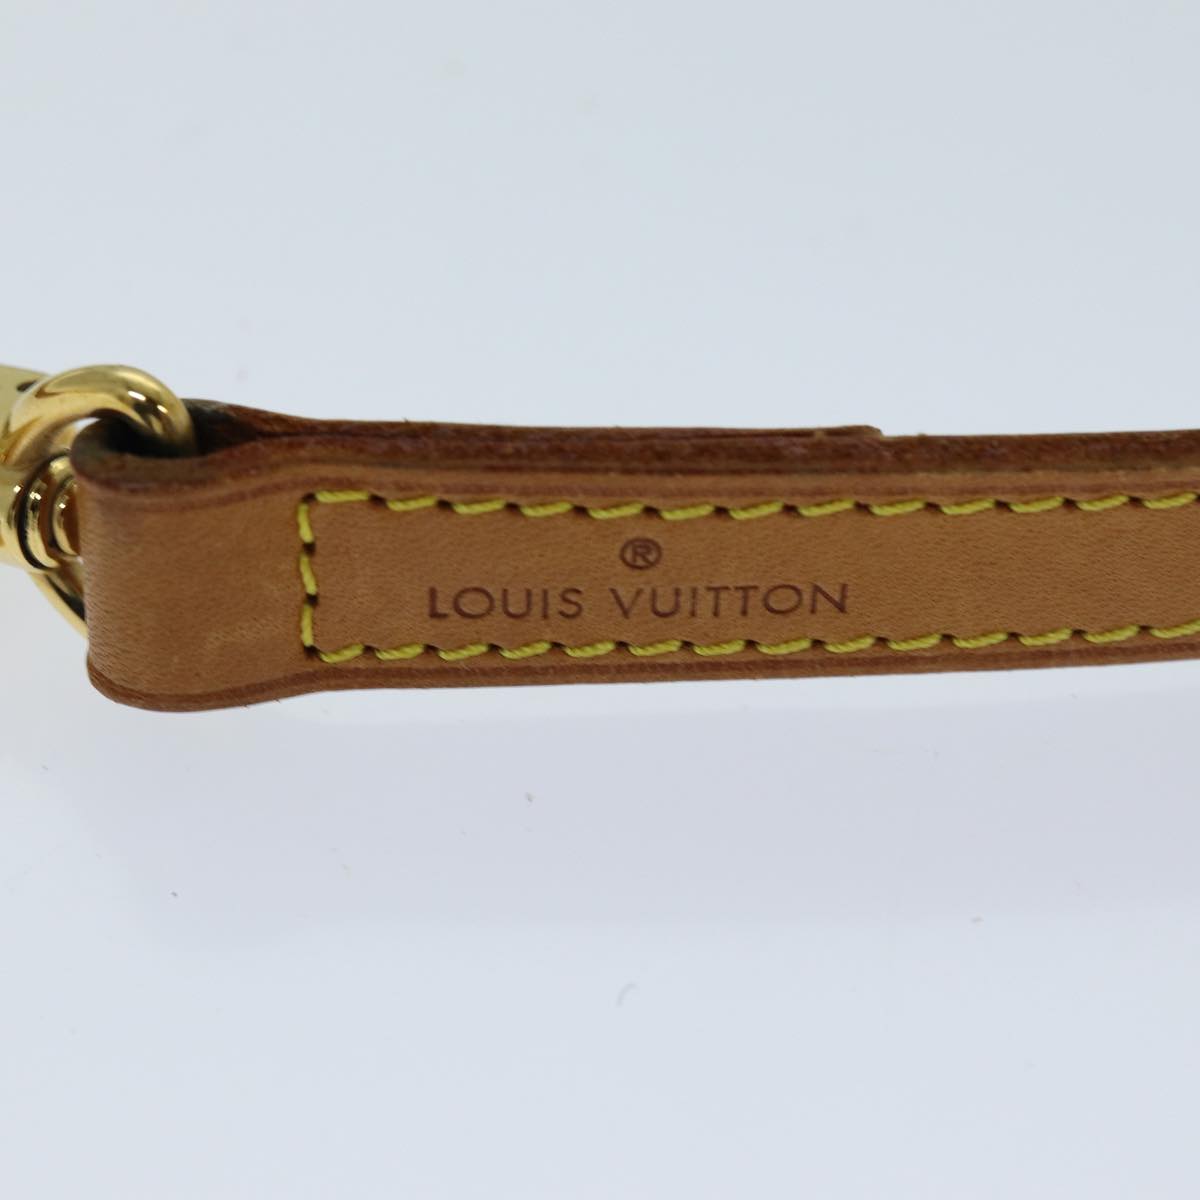 LOUIS VUITTON Shoulder Strap Leather 35.8"" Beige LV Auth 76423